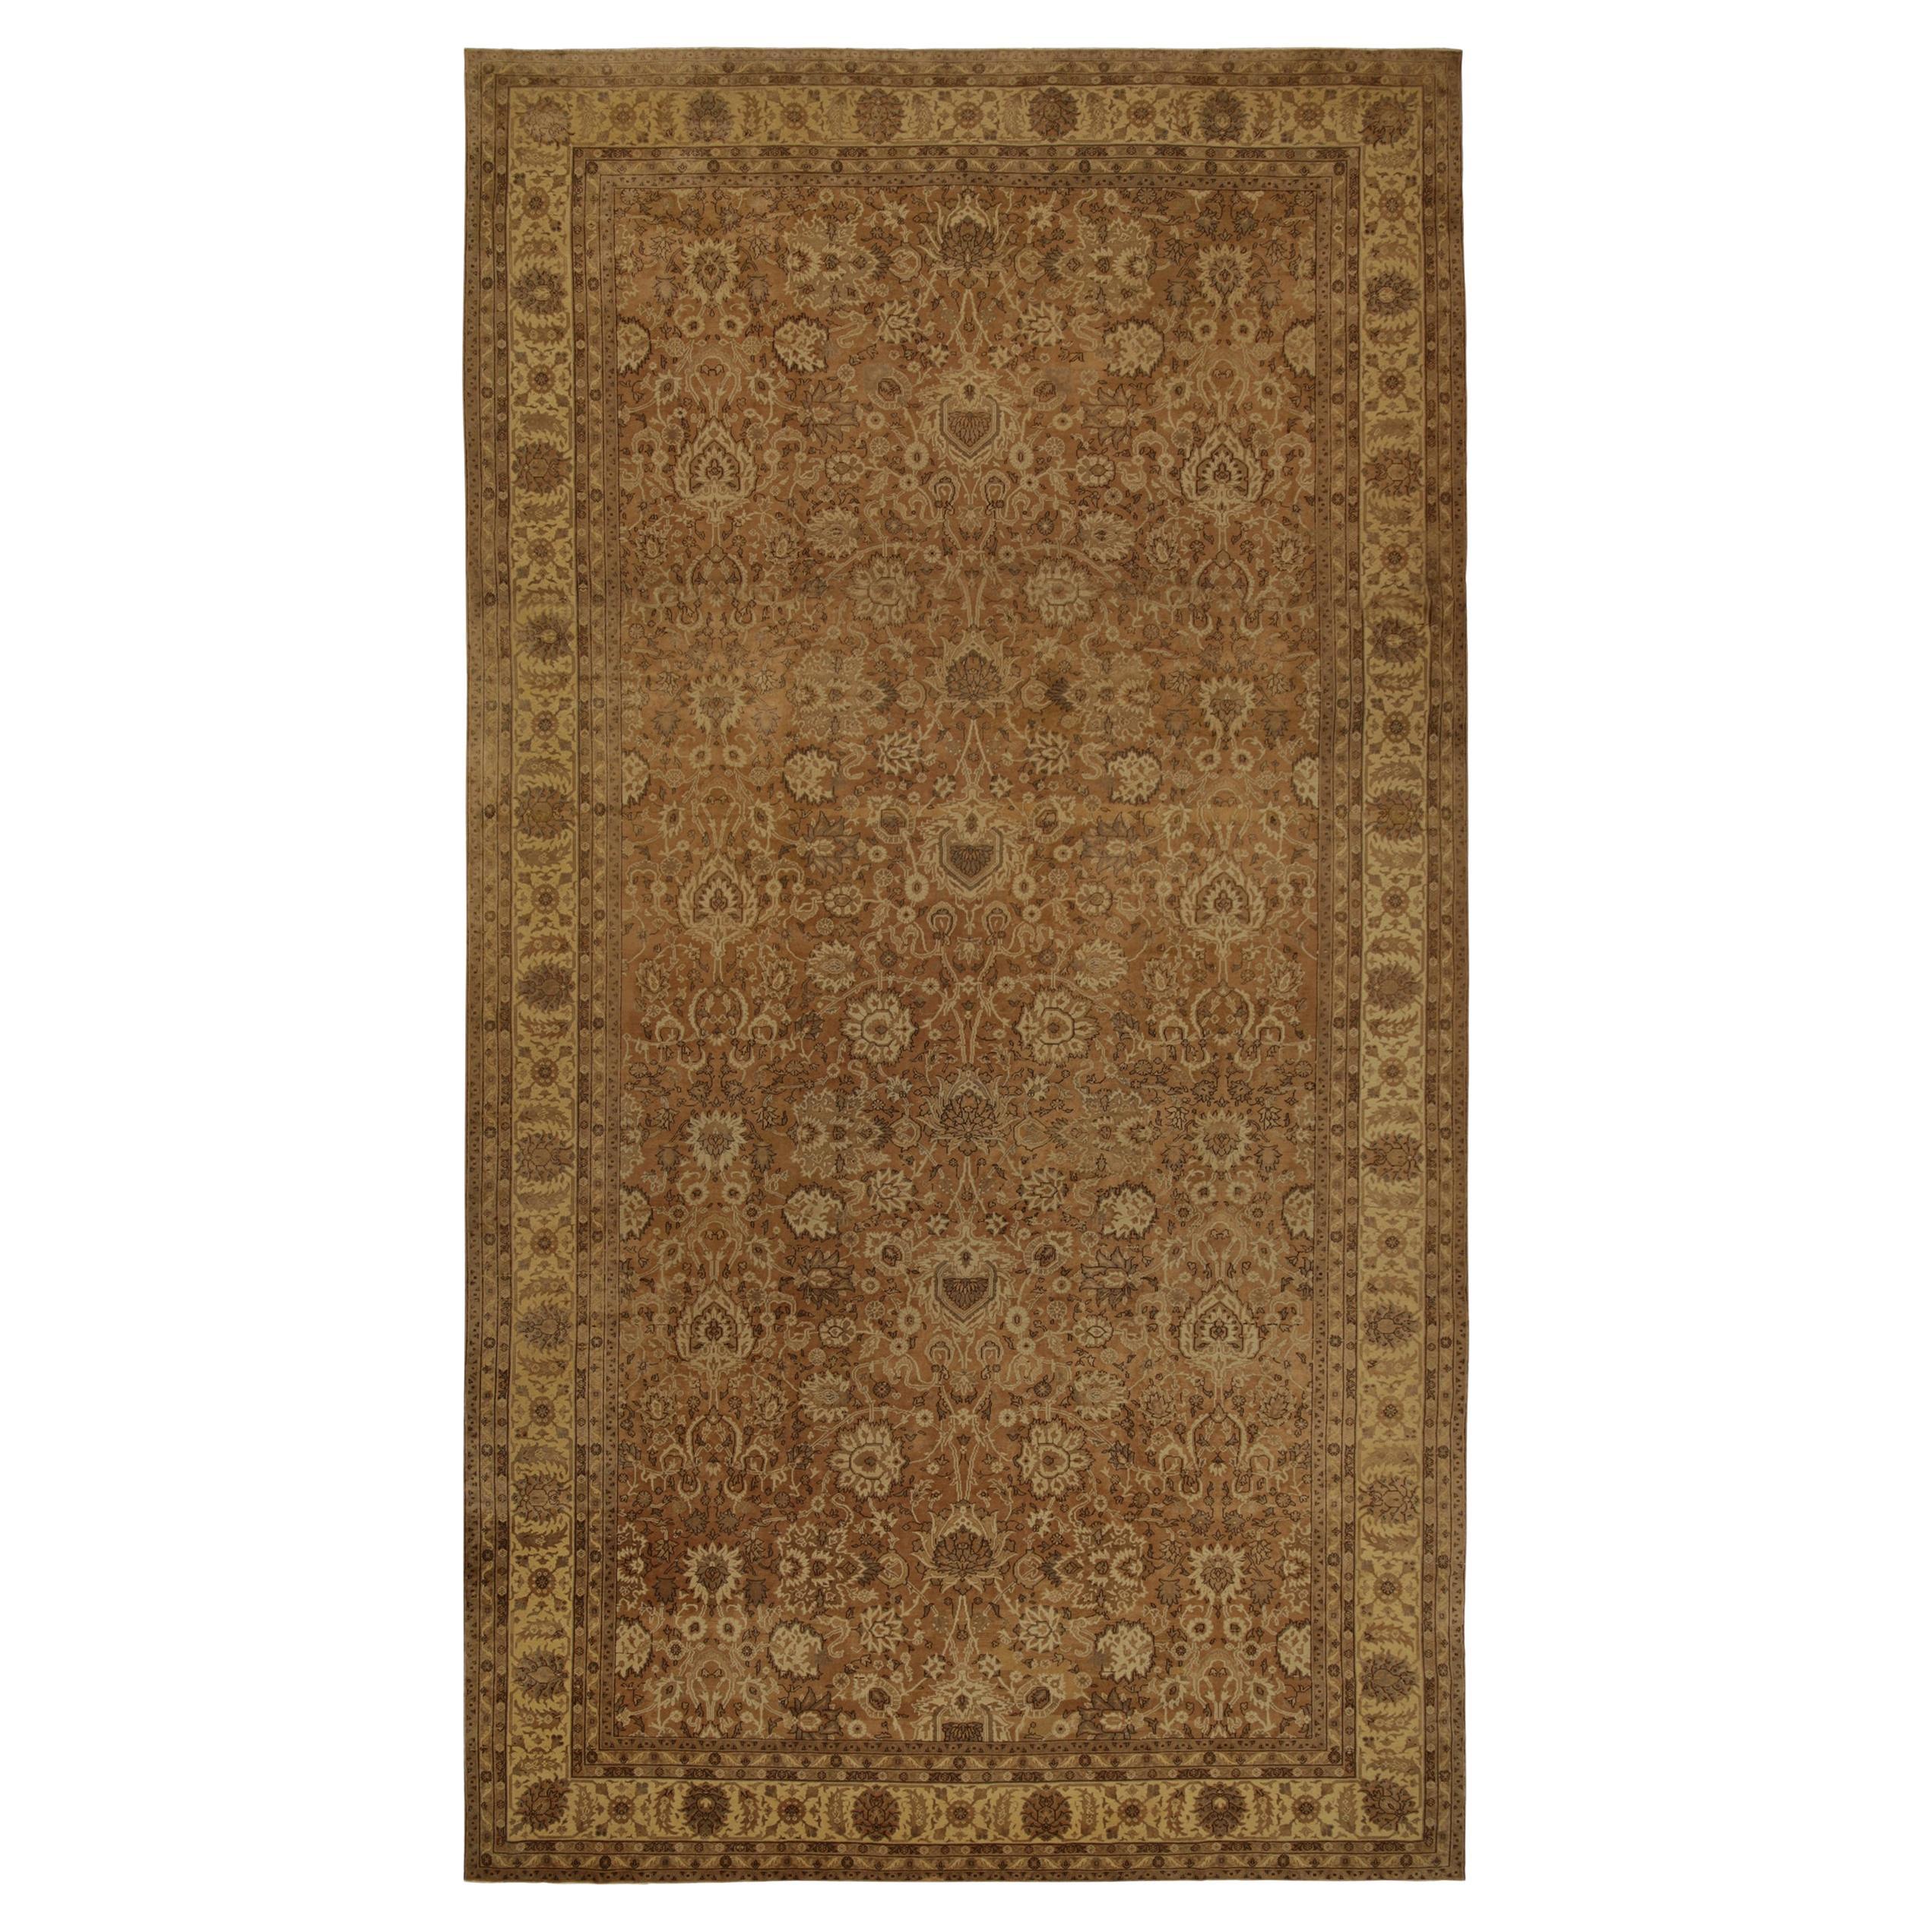 Antiker persischer Teppich in Beige-Braun und Gold mit Blumenmuster von Teppich & Kelim